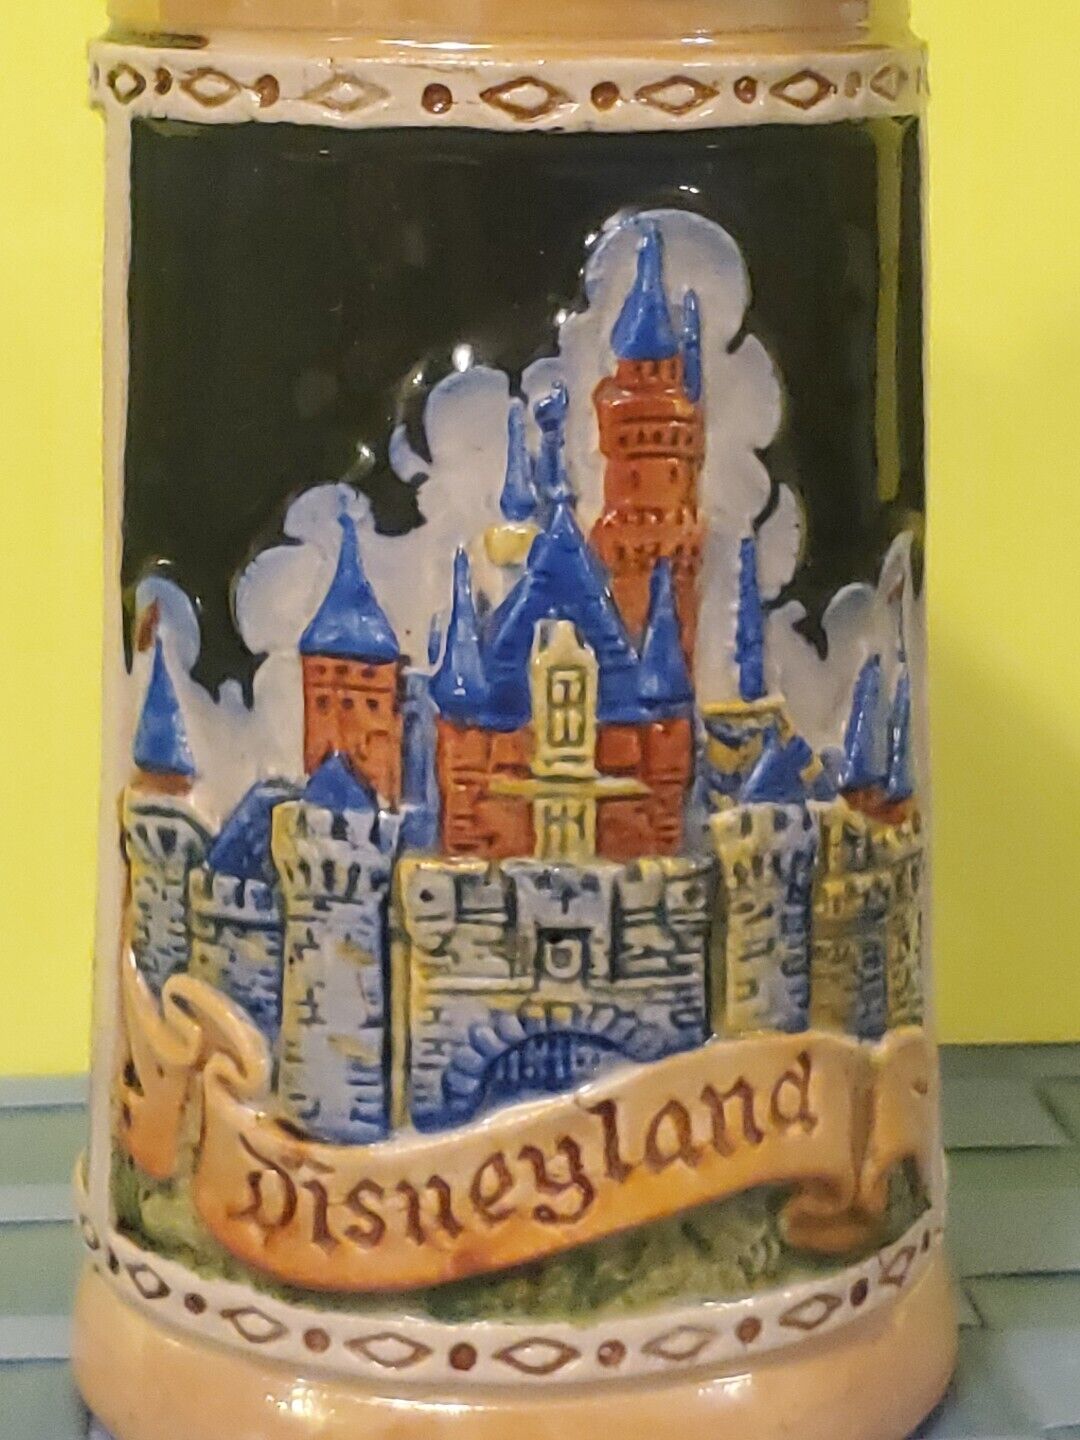 Vintage Disneyland Beer Stein with Lid, Made In Germany, DISNEYLAND STORE ITEM